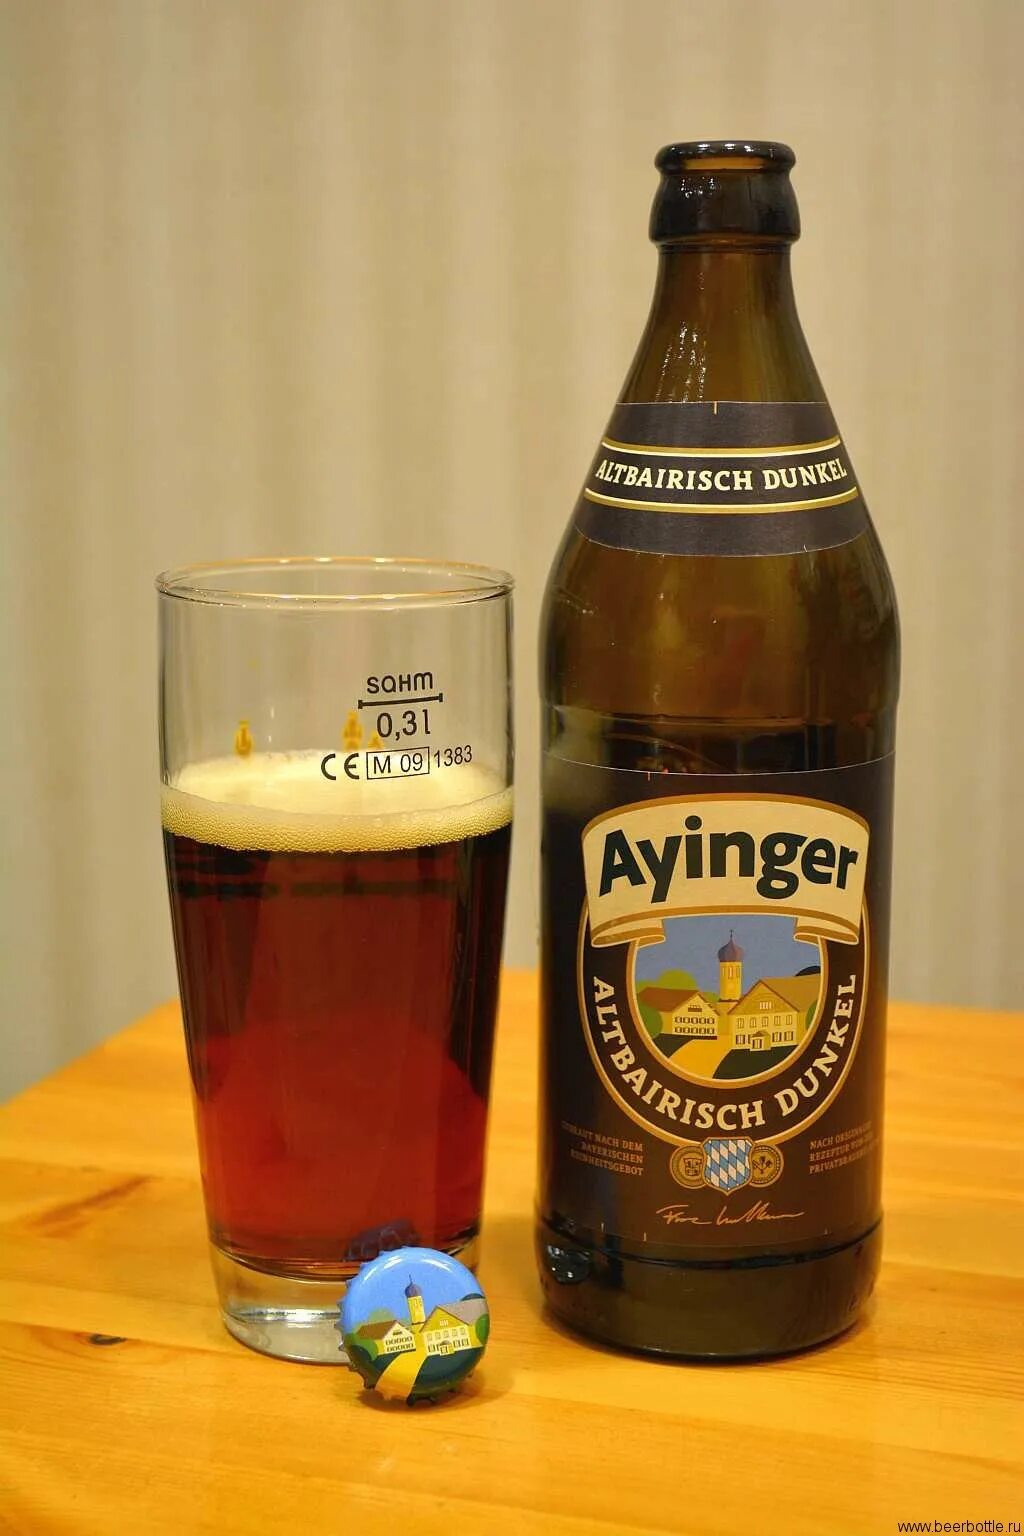 Пиво ayinger купить. Айингер Альтбайриш Дункель. Пиво Ayinger Urweisse. Пиво Айнгер Германия. Пиво Altbairisch dunkel.